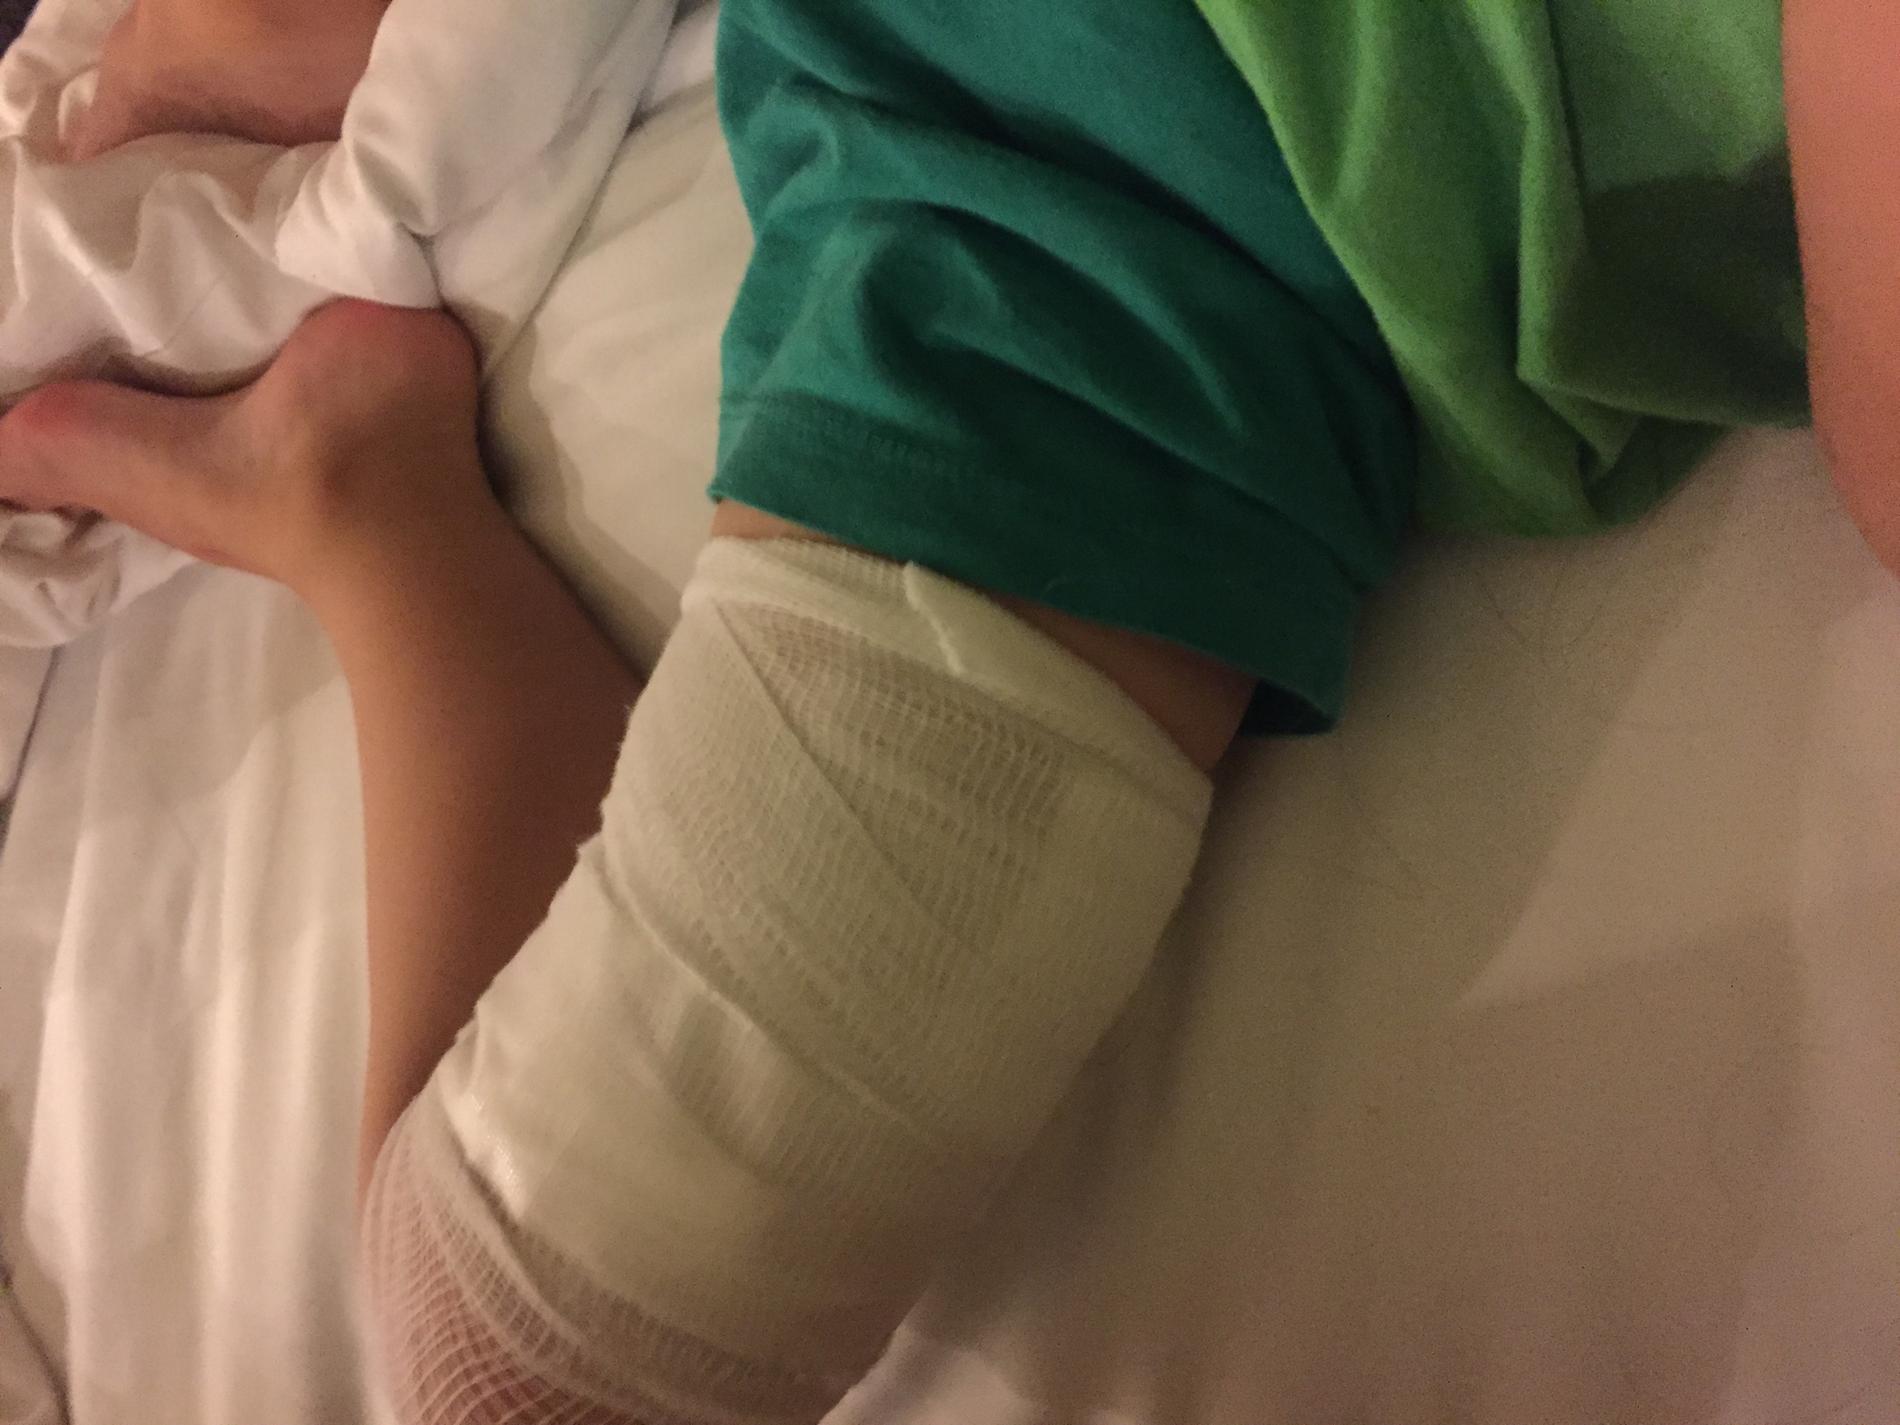 Olas treårige son blev biten i benet. 